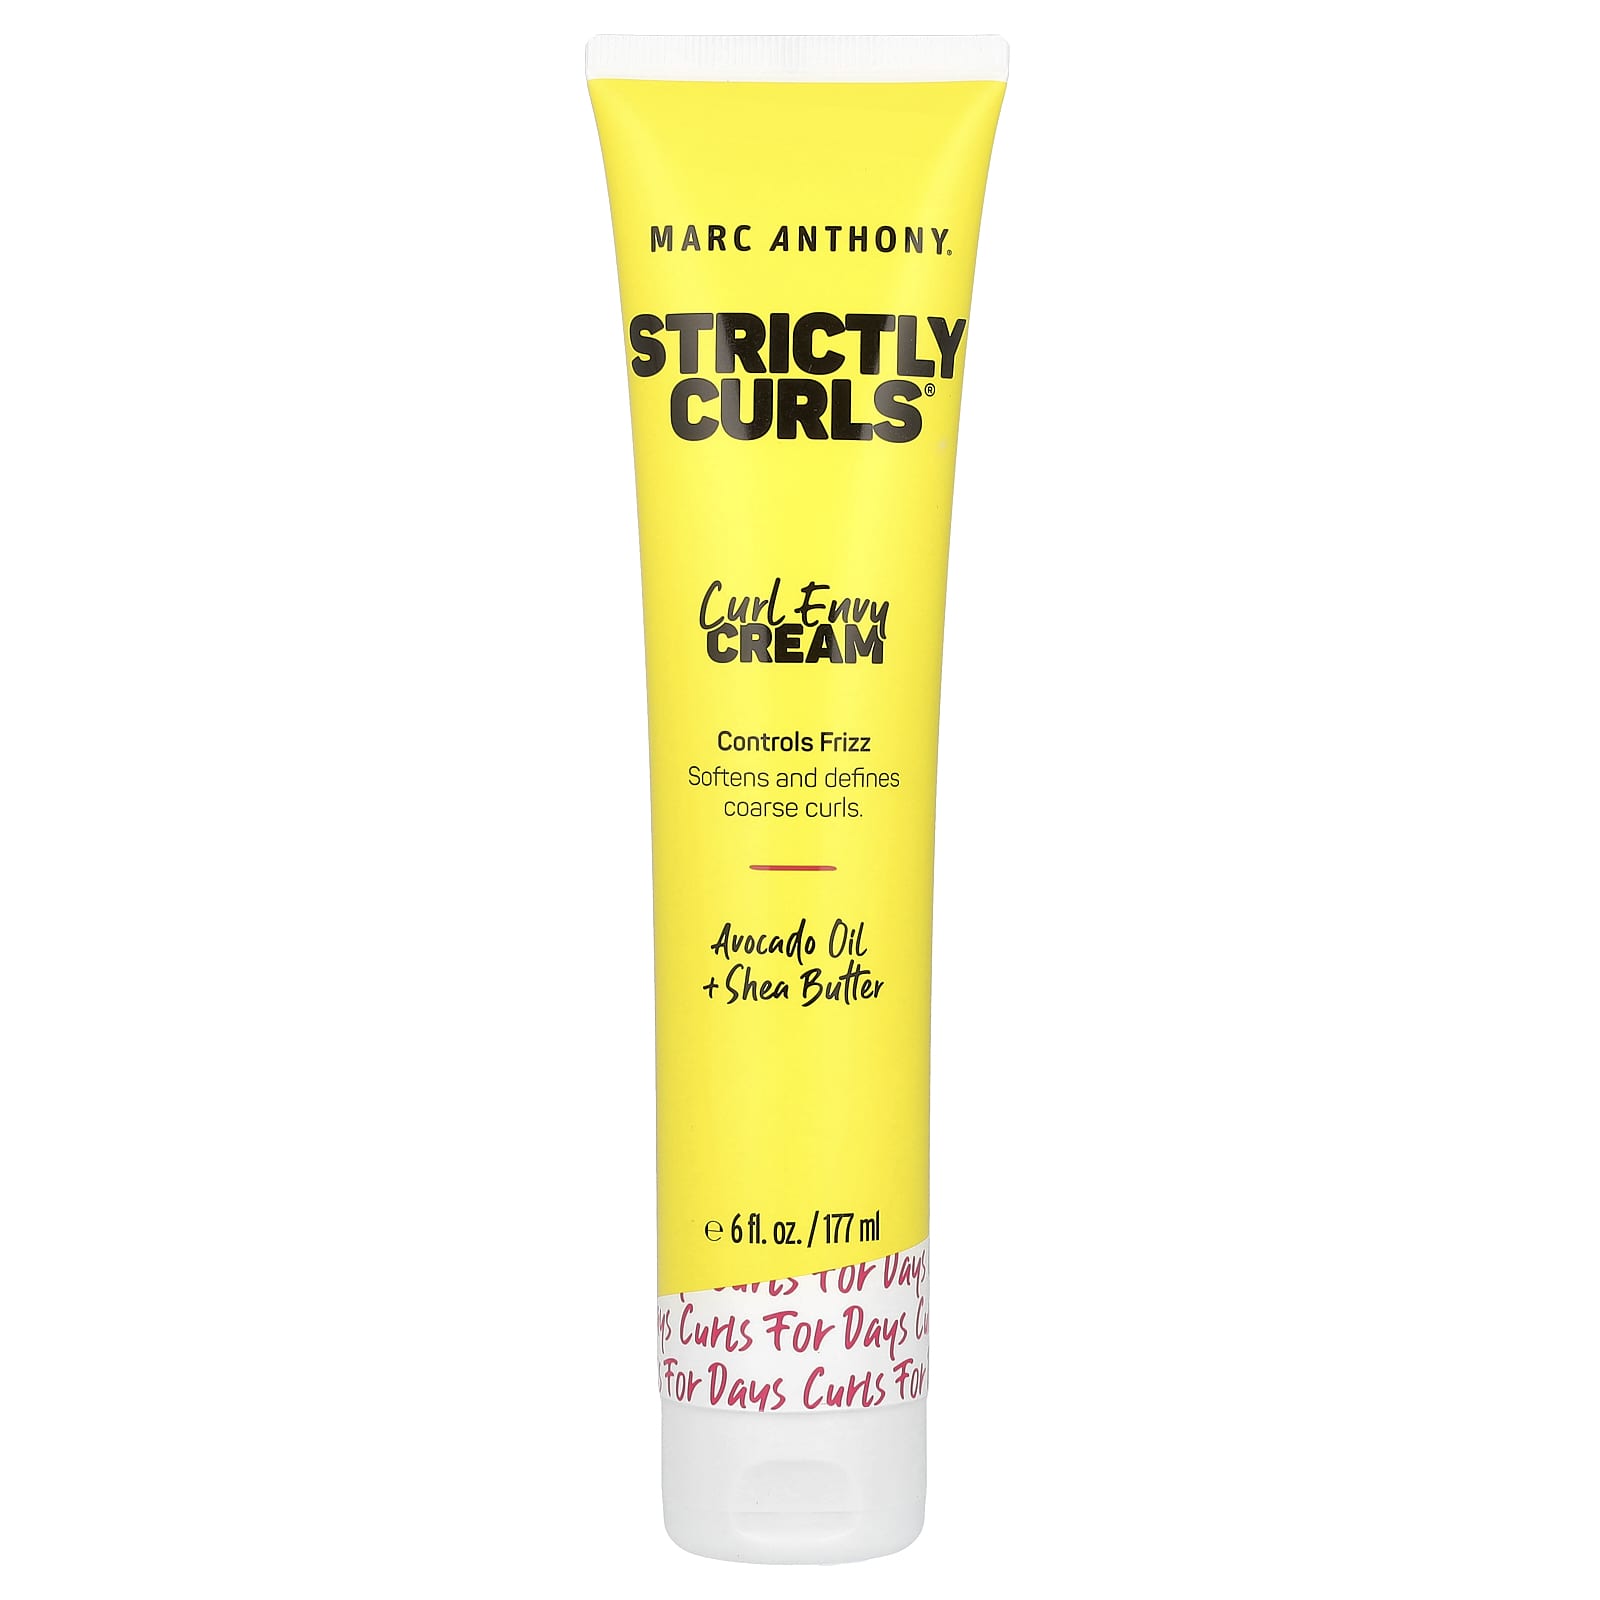 Marc Anthony Strictly Curls Curl Envy Cream 6 Fl Oz 177 Ml 7897